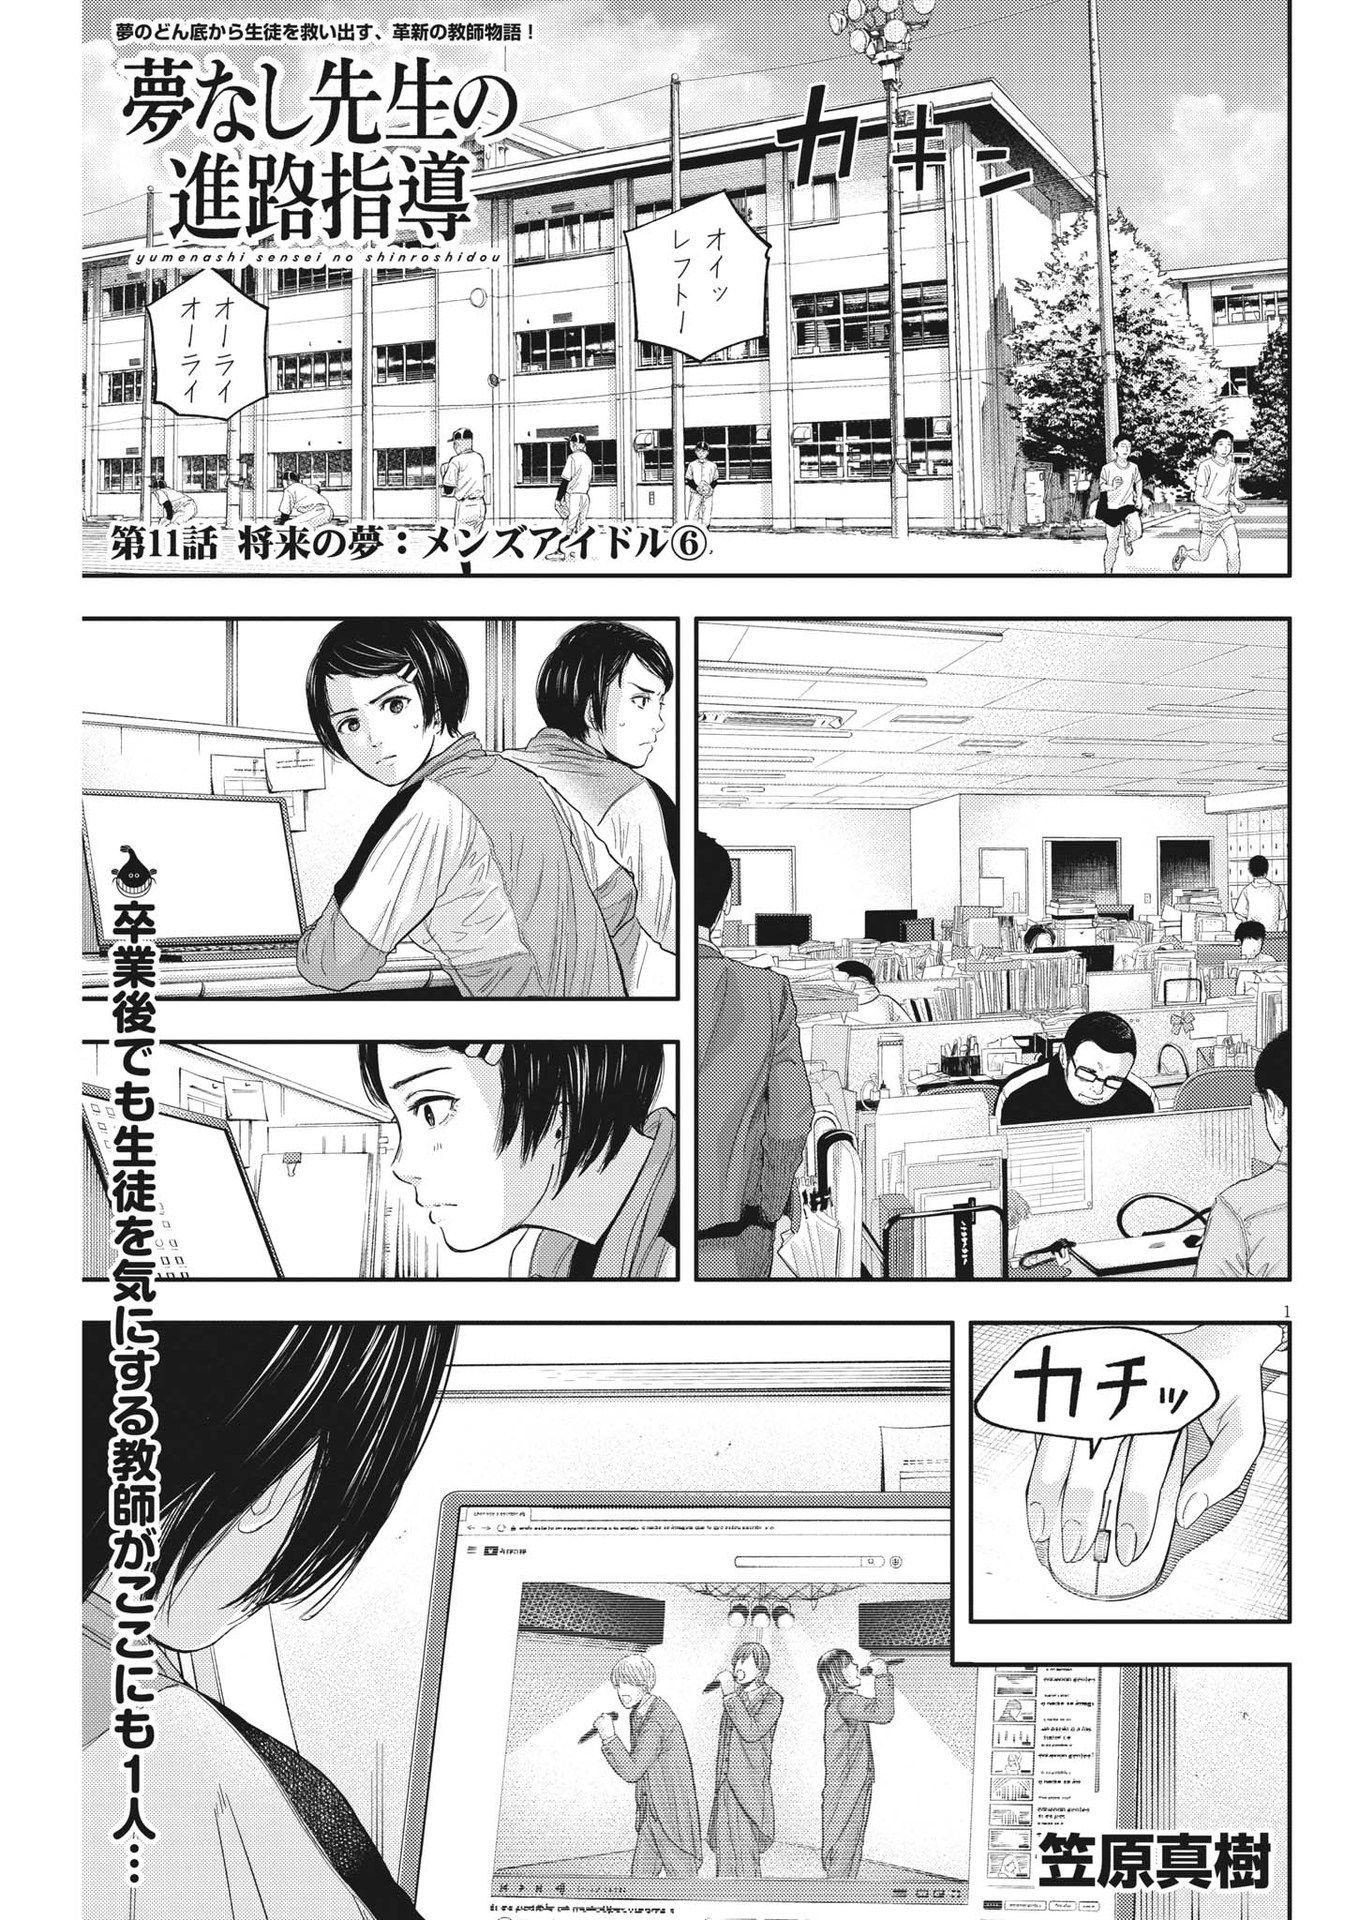 Yumenashi-sensei no Shinroshidou - Chapter 11 - Page 1